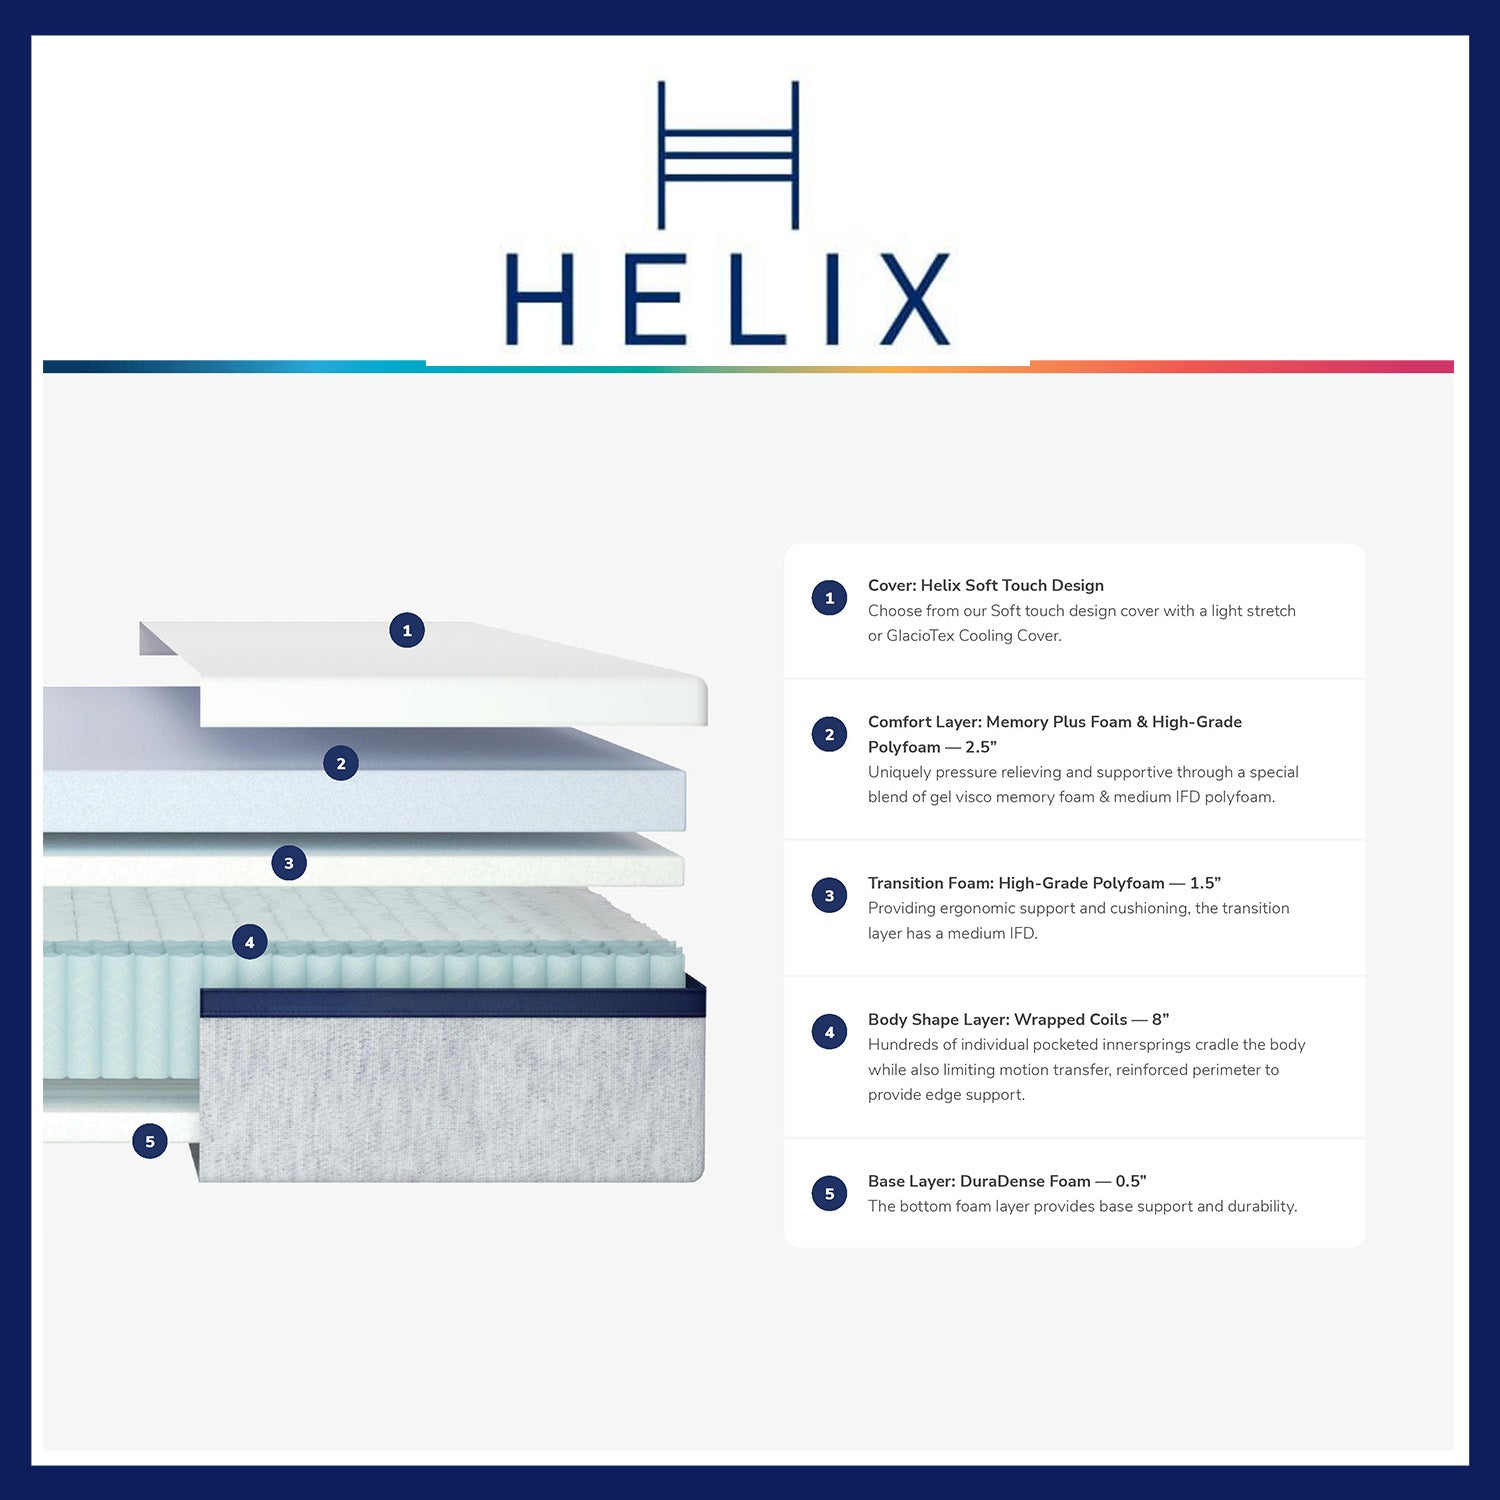 Helix Midnight Mattress 20% + 2 Free Dream Pillows+ Spring Savings